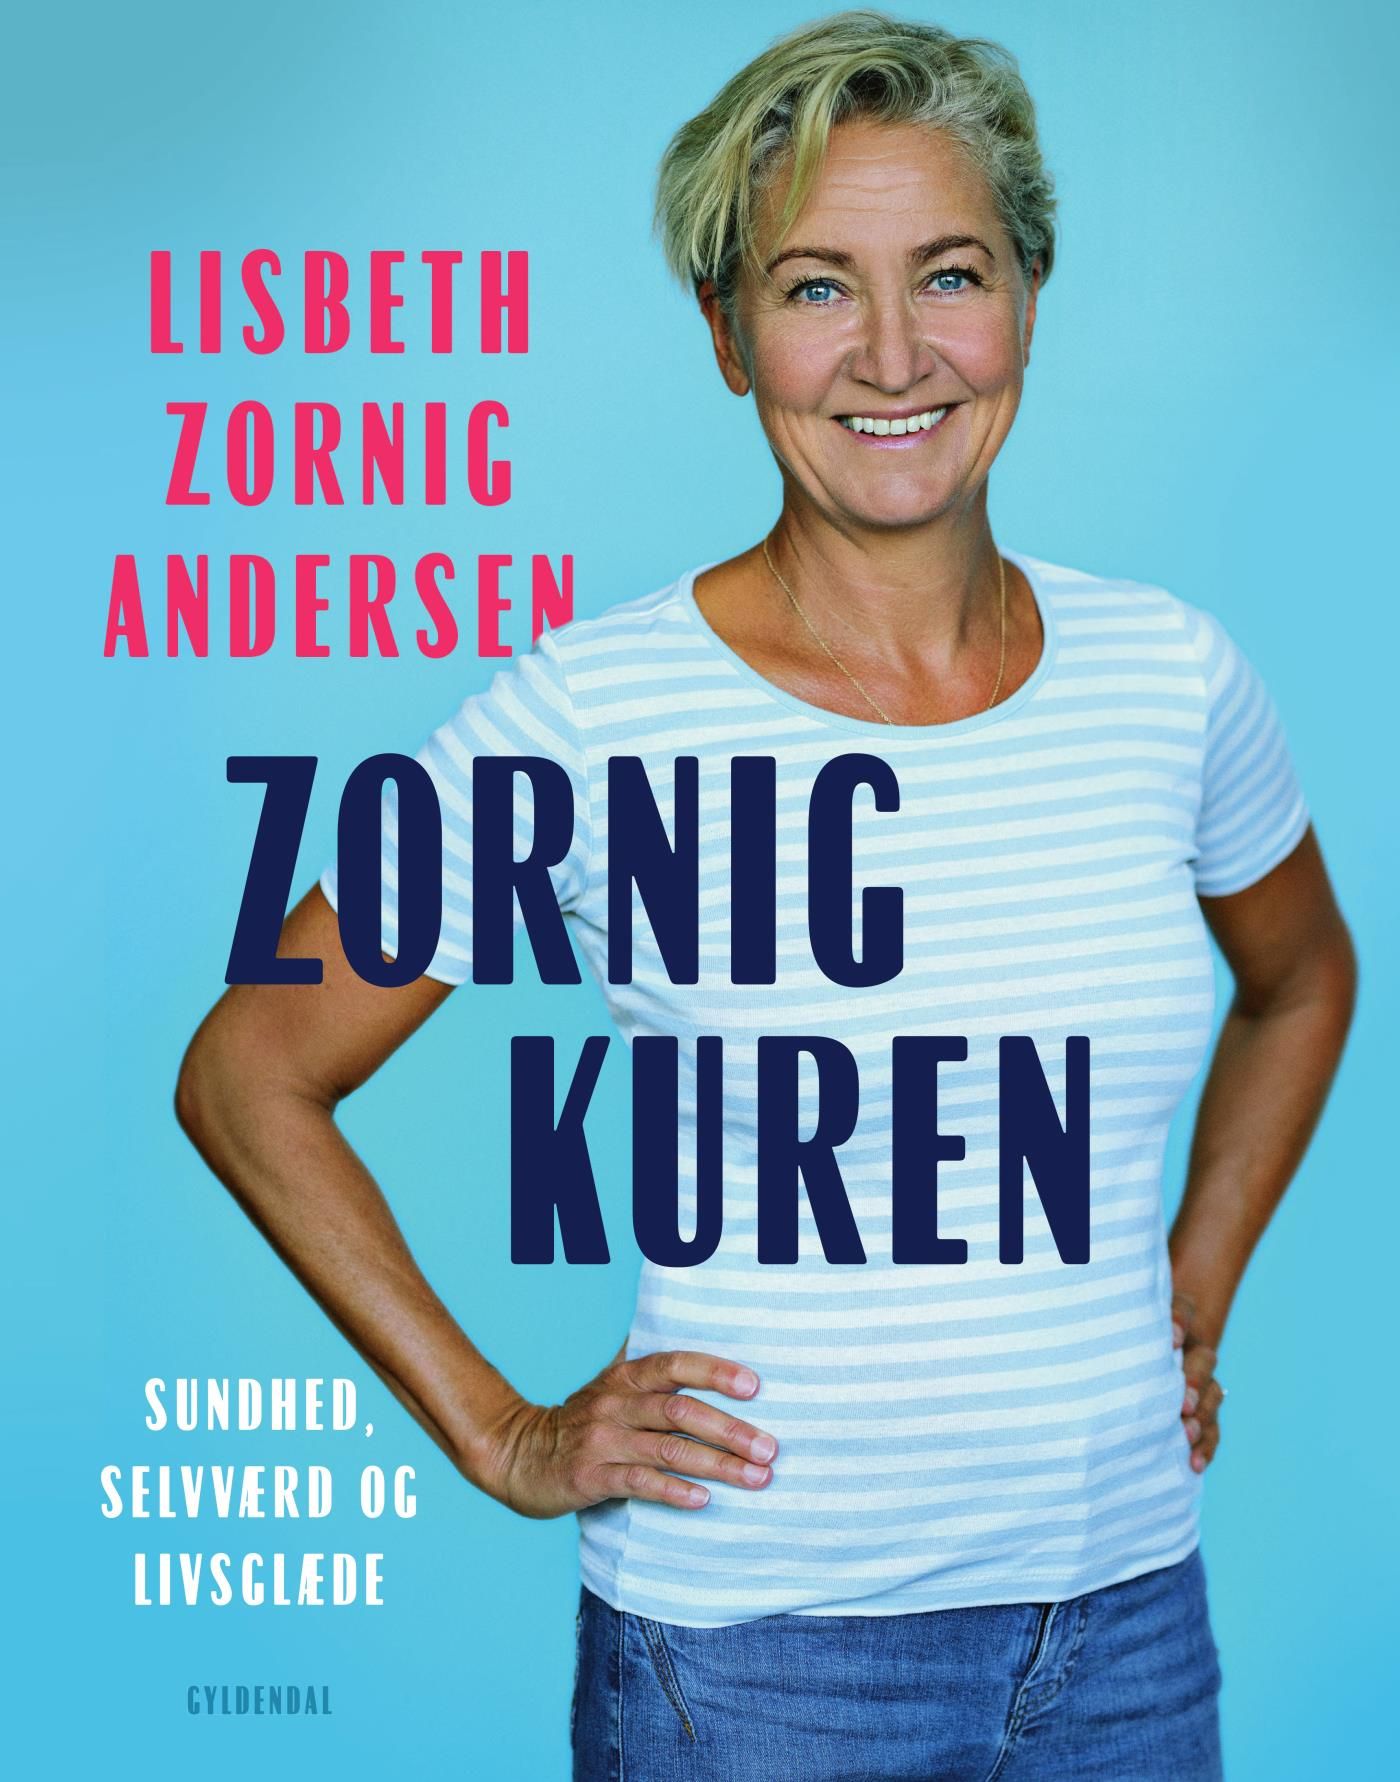 Zornigkuren, audiobook by Lisbeth Zornig Andersen